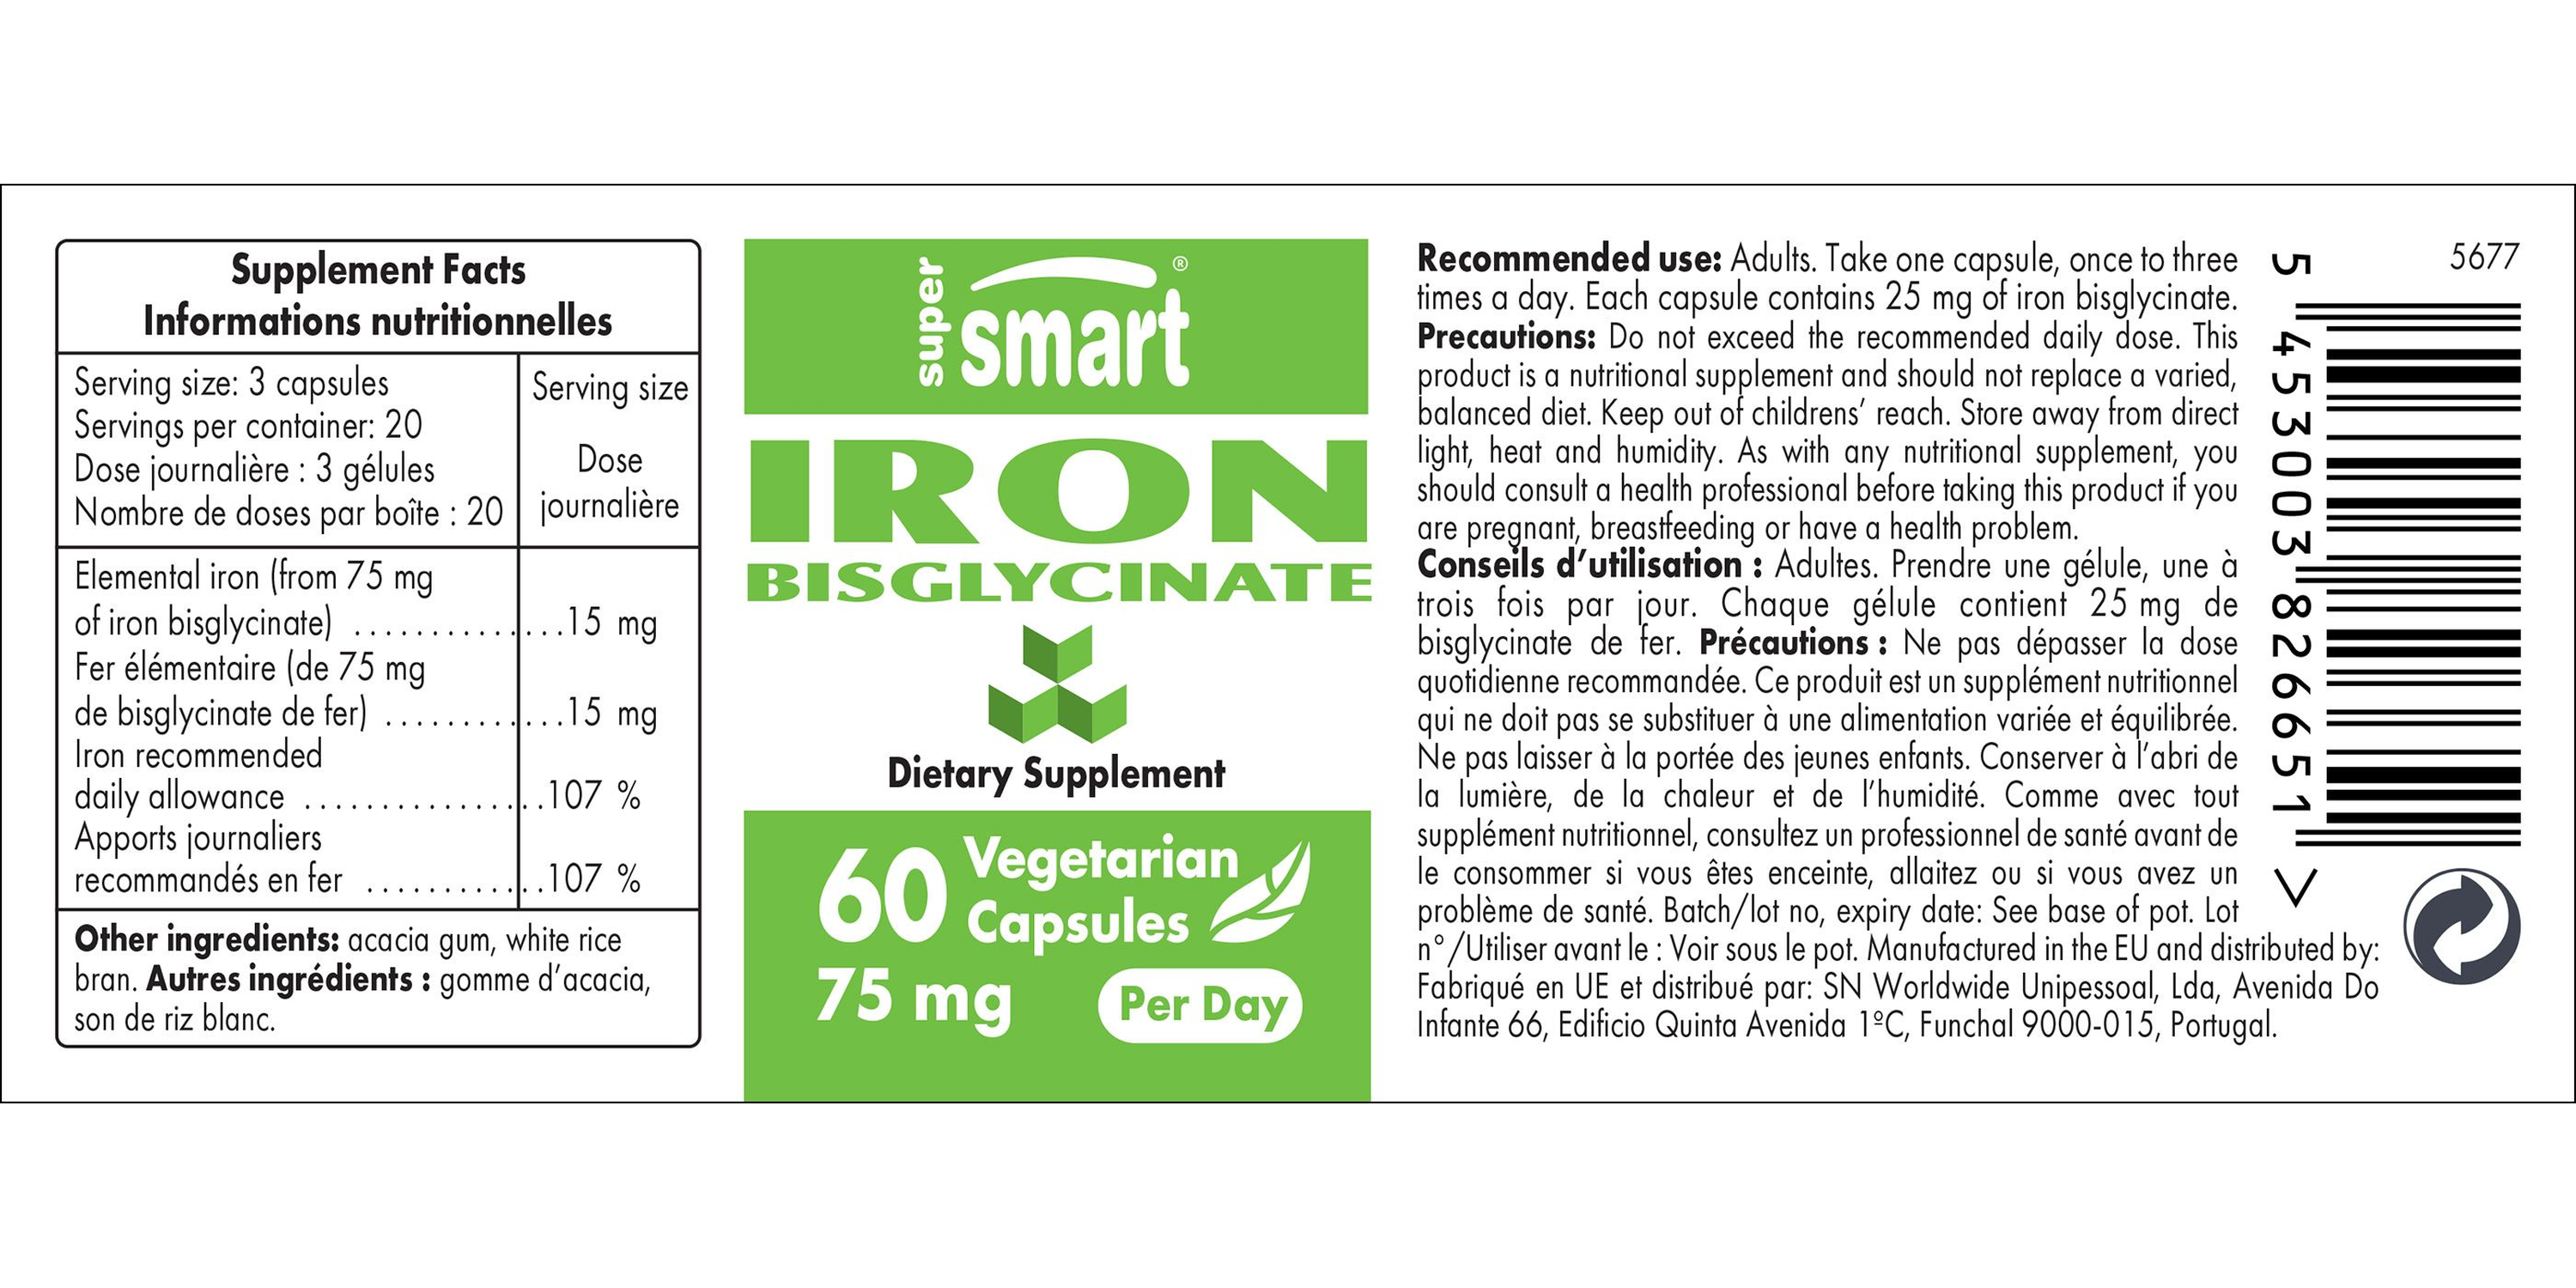 Iron Bisglycinate Supplement